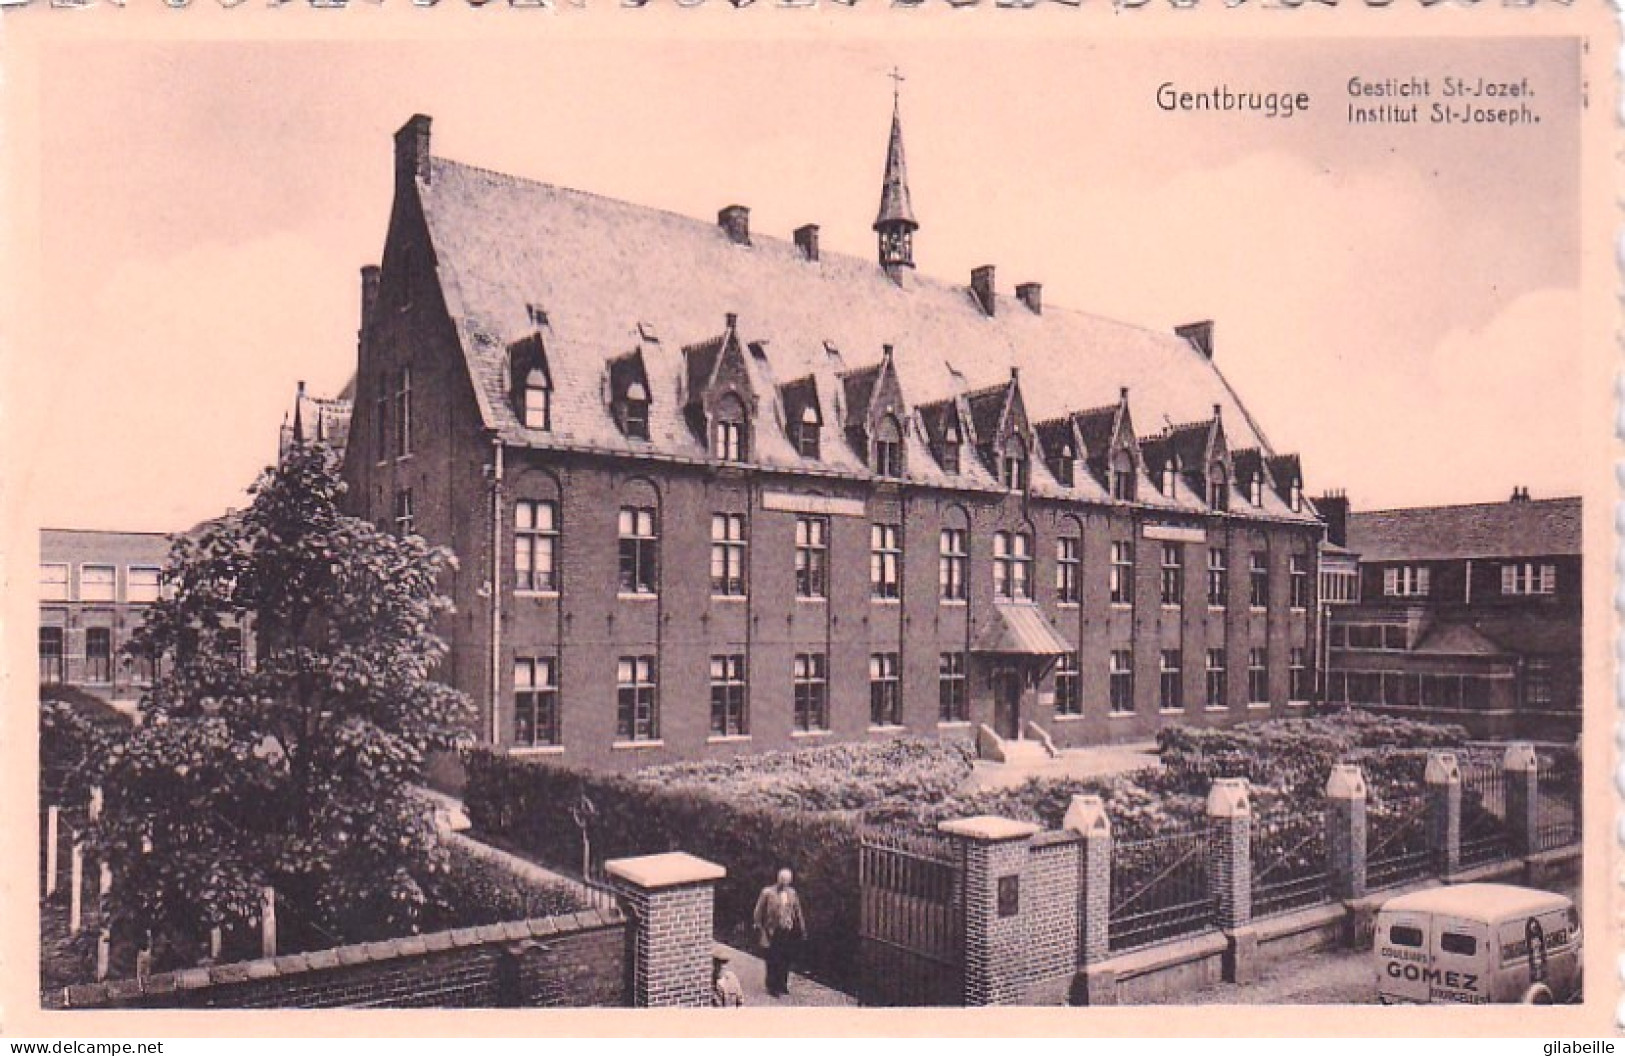 Gent - Gand - GENTBRUGGE -  Gesticht St Jozef - Institut St Joseph - Gent